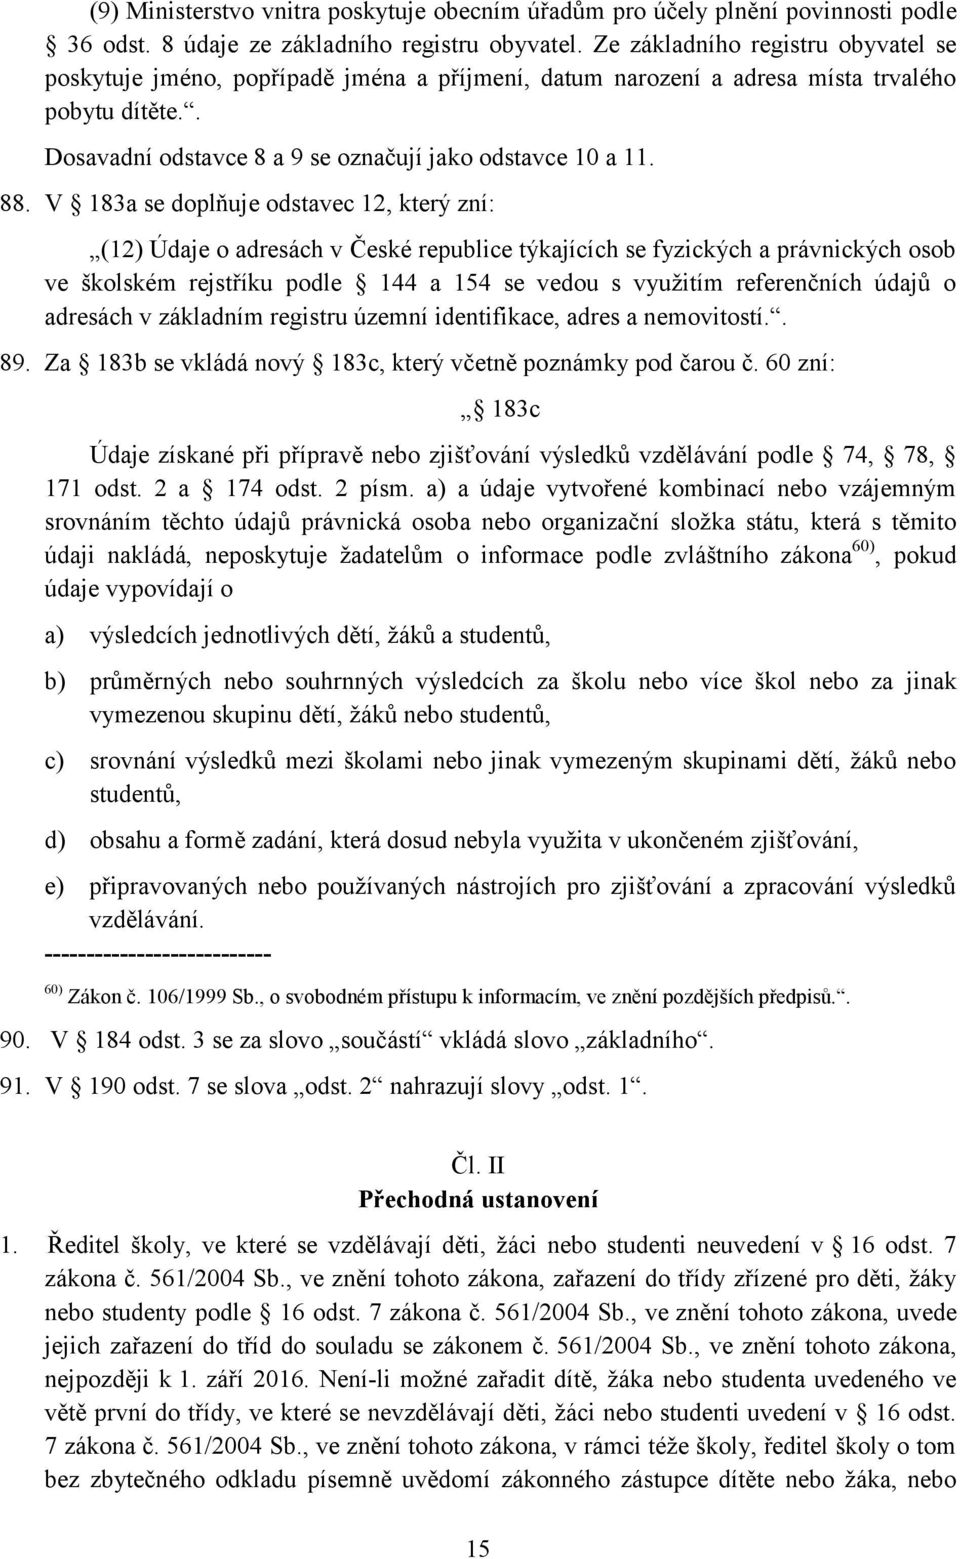 V 183a se doplňuje odstavec 12, který zní: (12) Údaje o adresách v České republice týkajících se fyzických a právnických osob ve školském rejstříku podle 144 a 154 se vedou s využitím referenčních